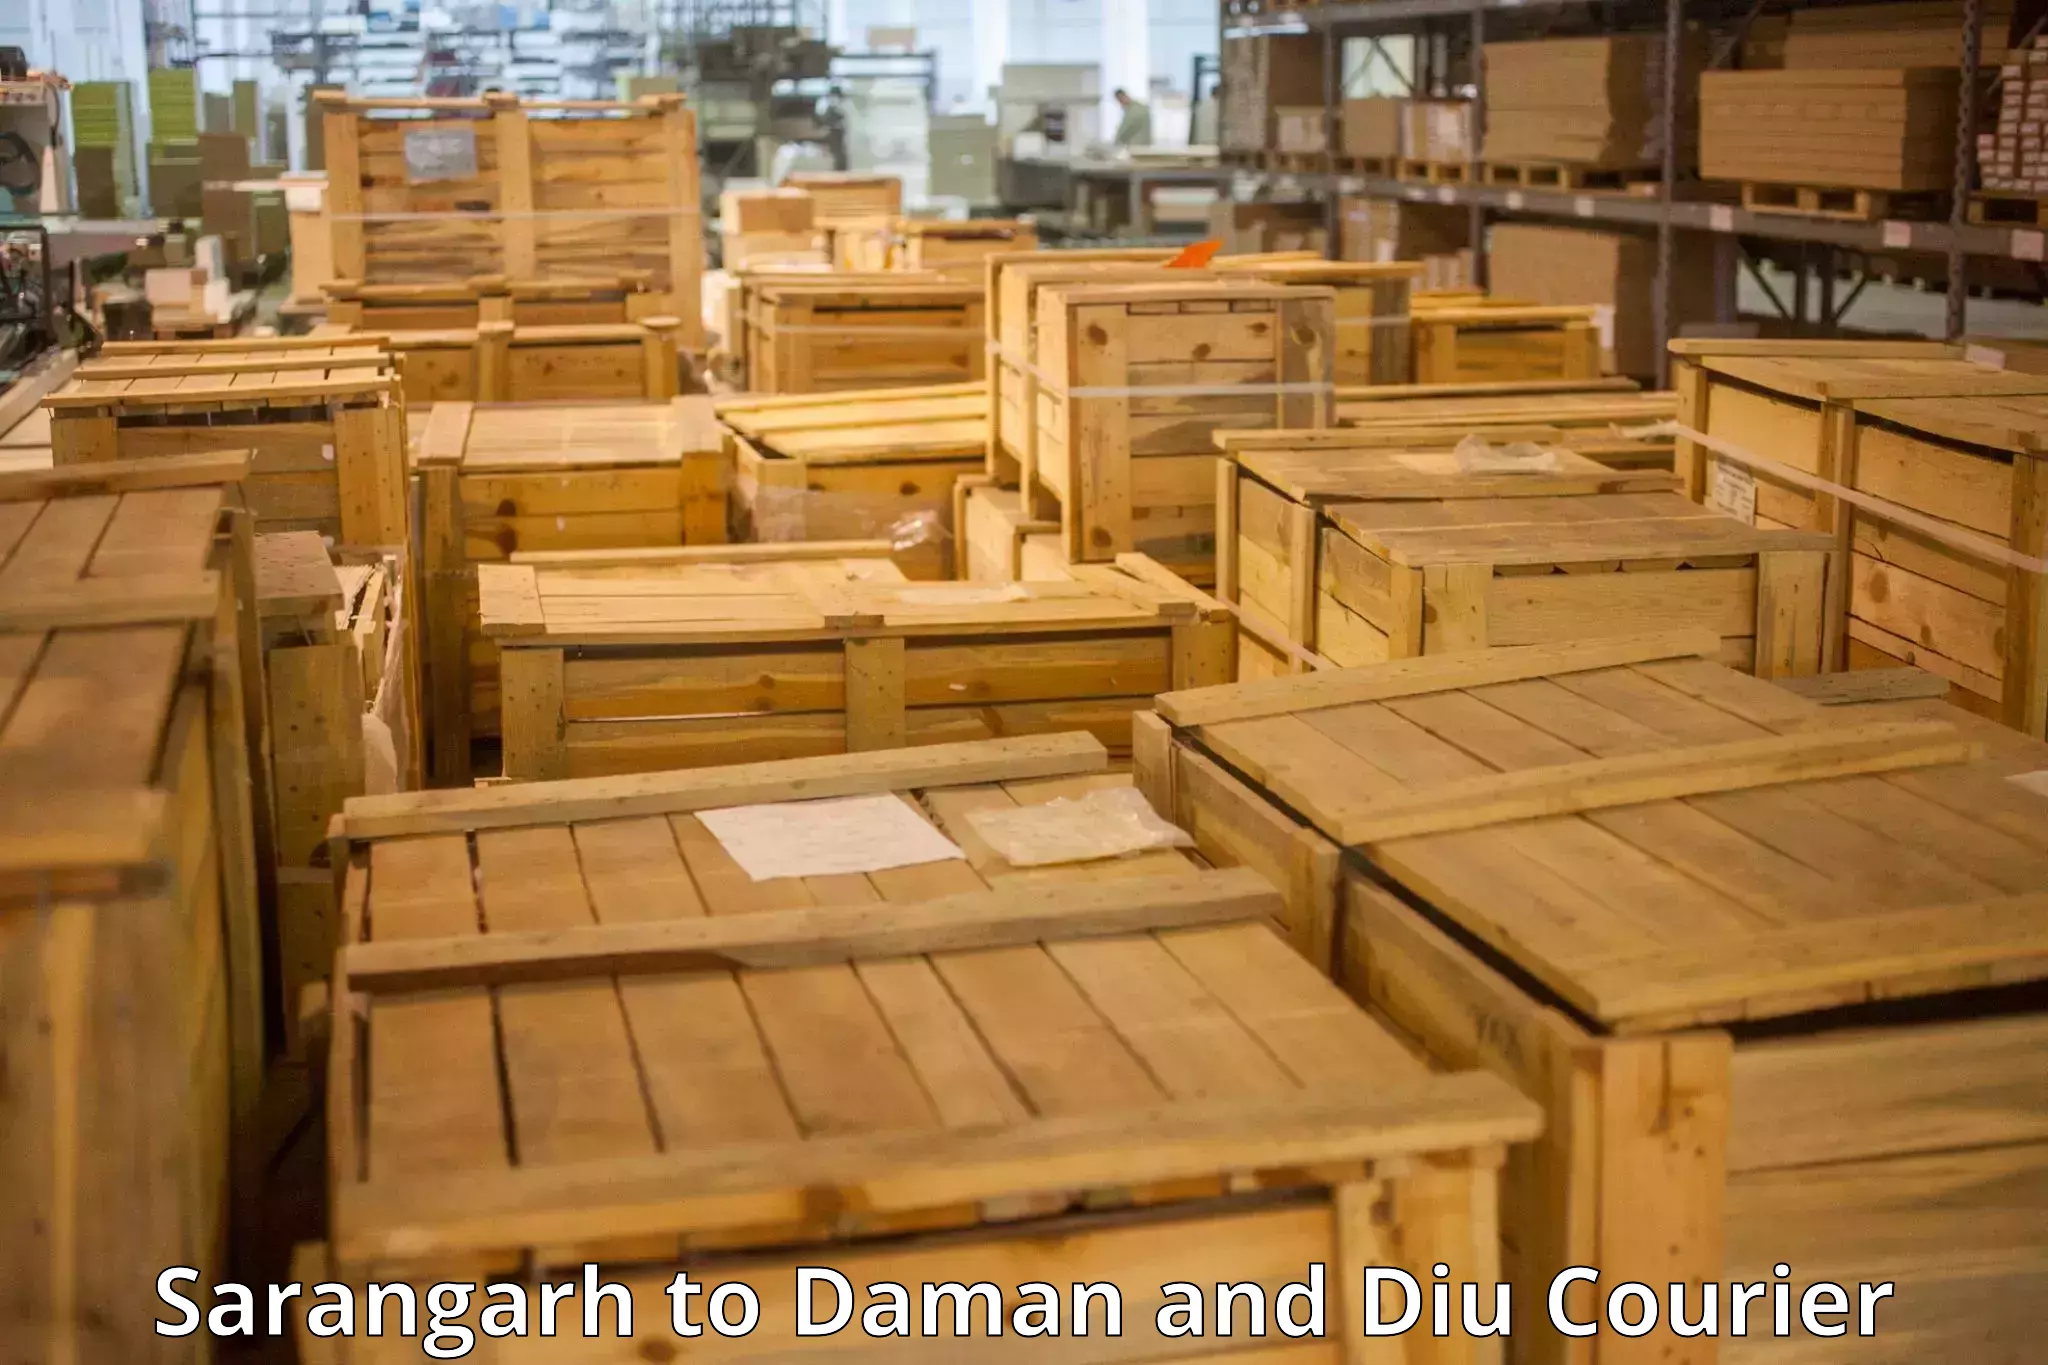 Luggage shipping guide Sarangarh to Daman